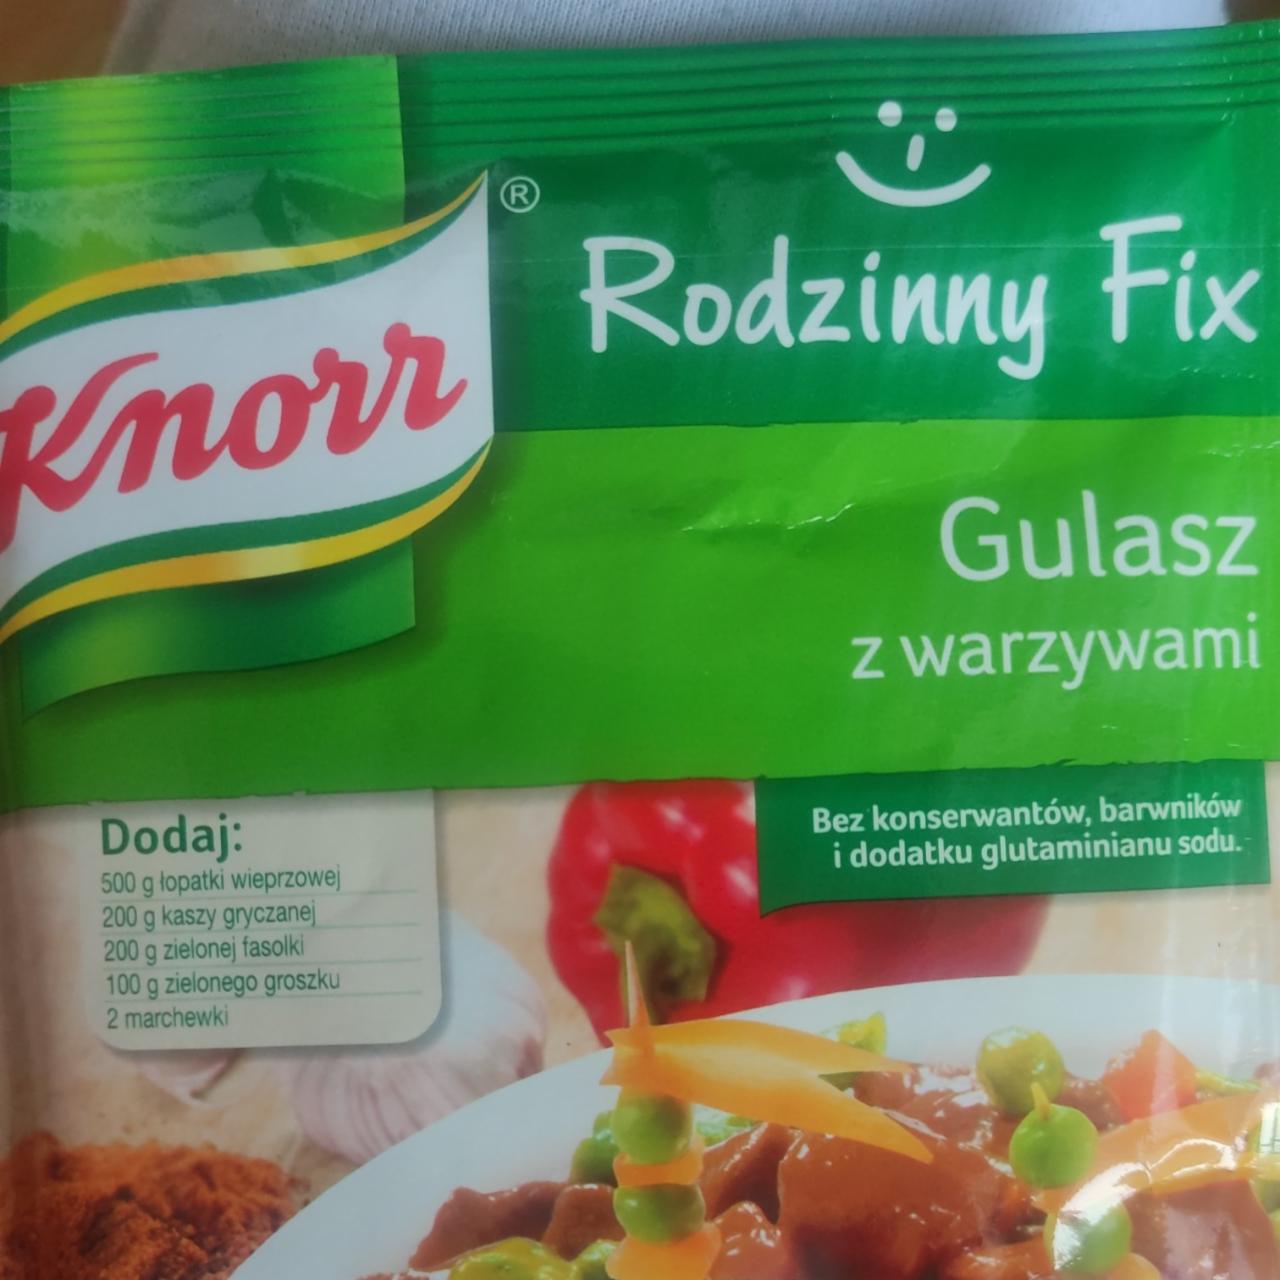 Zdjęcia - Rodzinny Fix Gulasz z warzywami Knorr